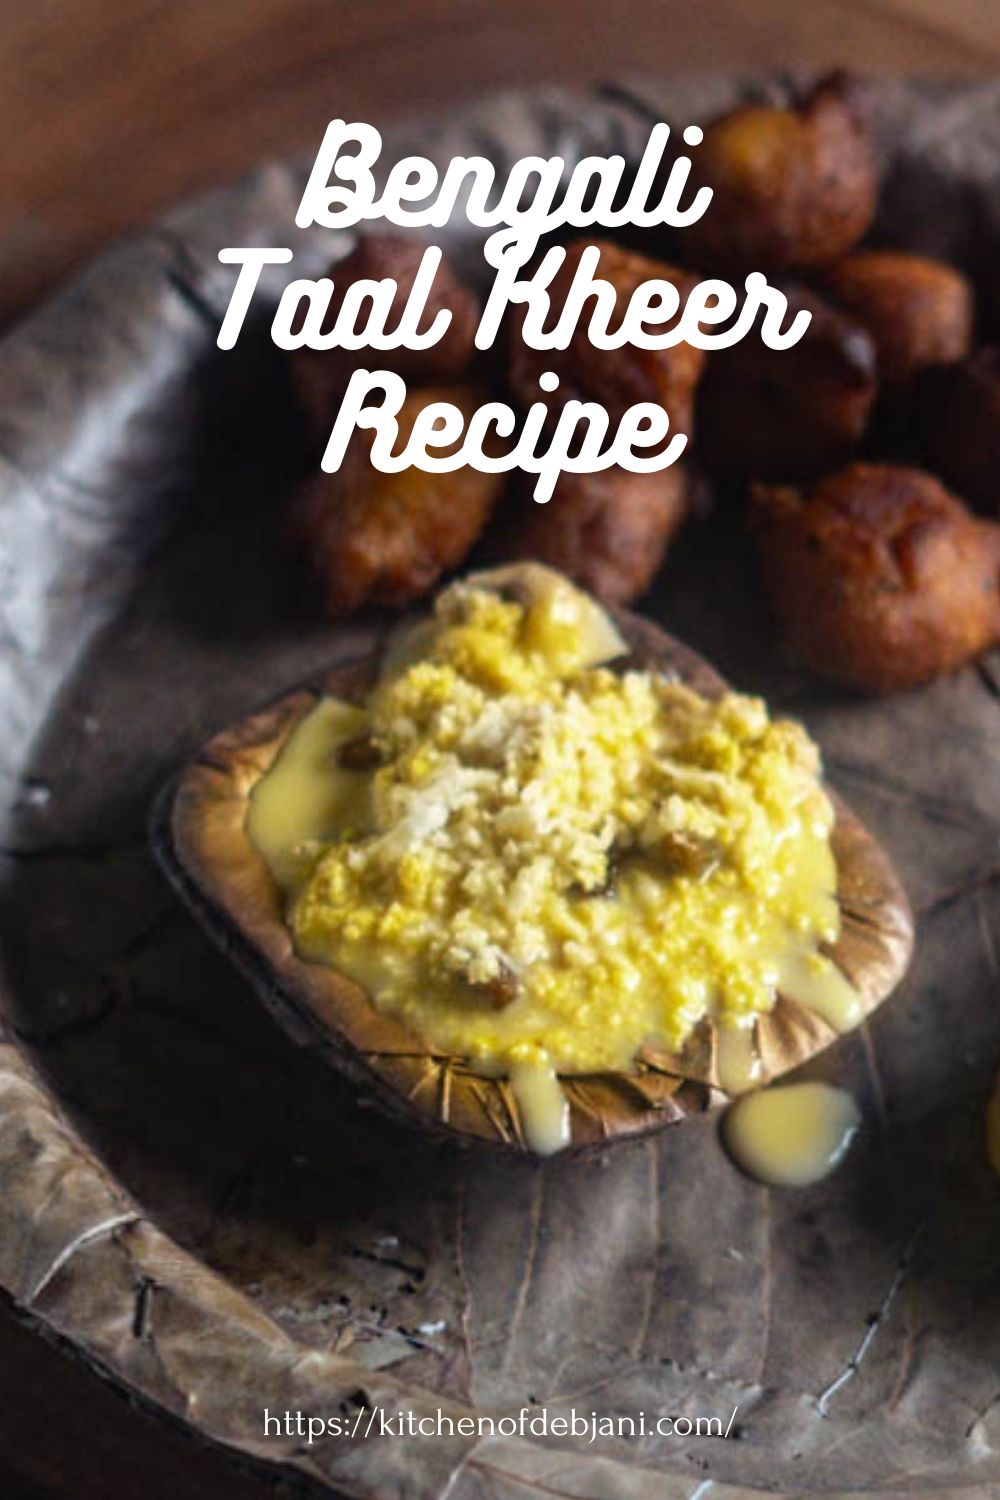 %Taal Kheer recipe debjanir rannaghar Food Pinterest Pin